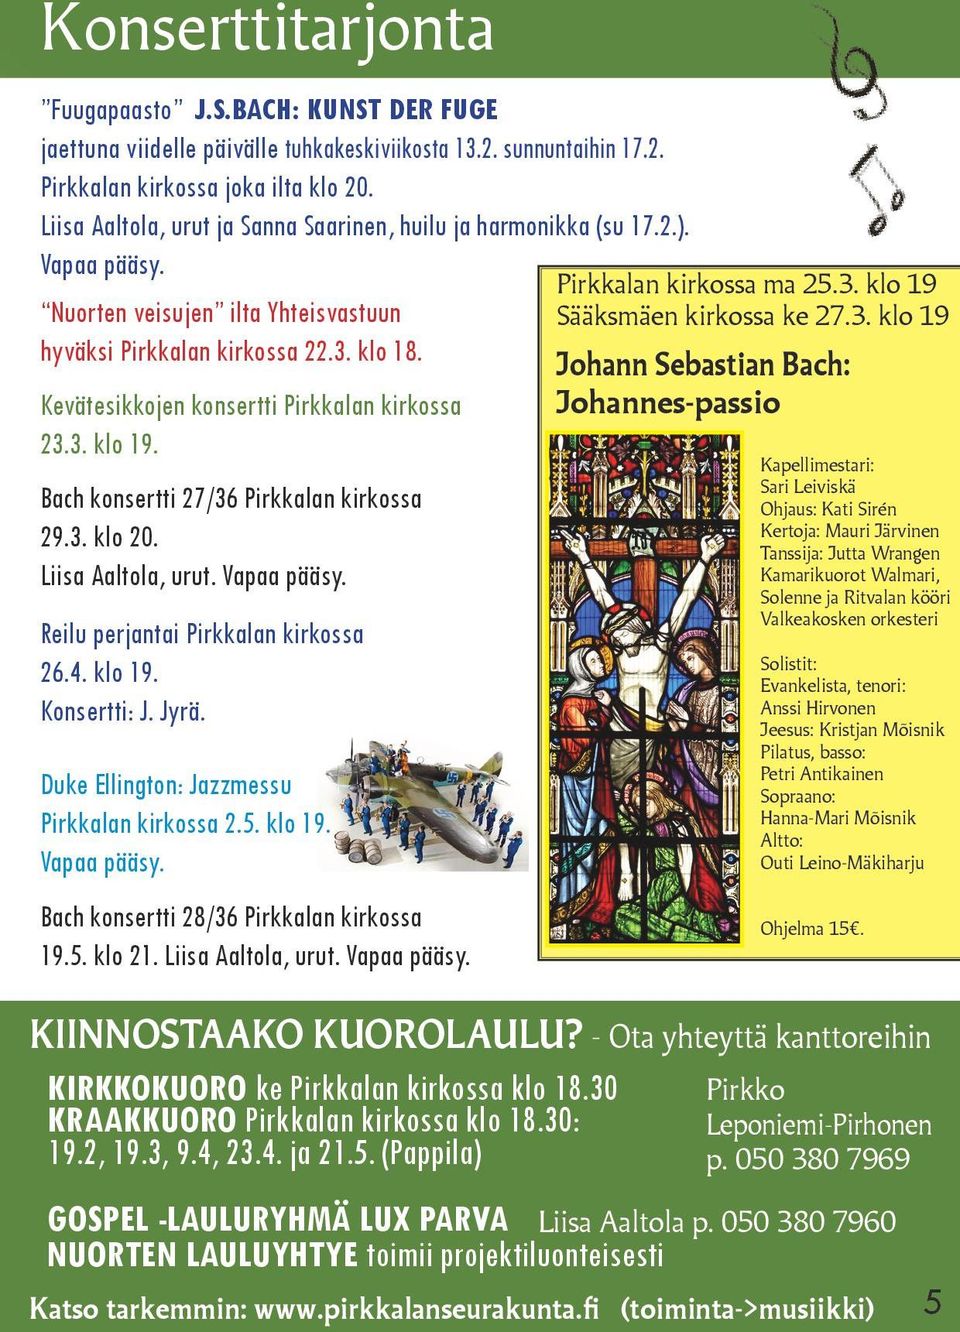 Kevätesikkojen konsertti Pirkkalan kirkossa 23.3. klo 19. Bach konsertti 27/36 Pirkkalan kirkossa 29.3. klo 20. Liisa Aaltola, urut. Vapaa pääsy. Reilu perjantai Pirkkalan kirkossa 26.4. klo 19. Konsertti: J.